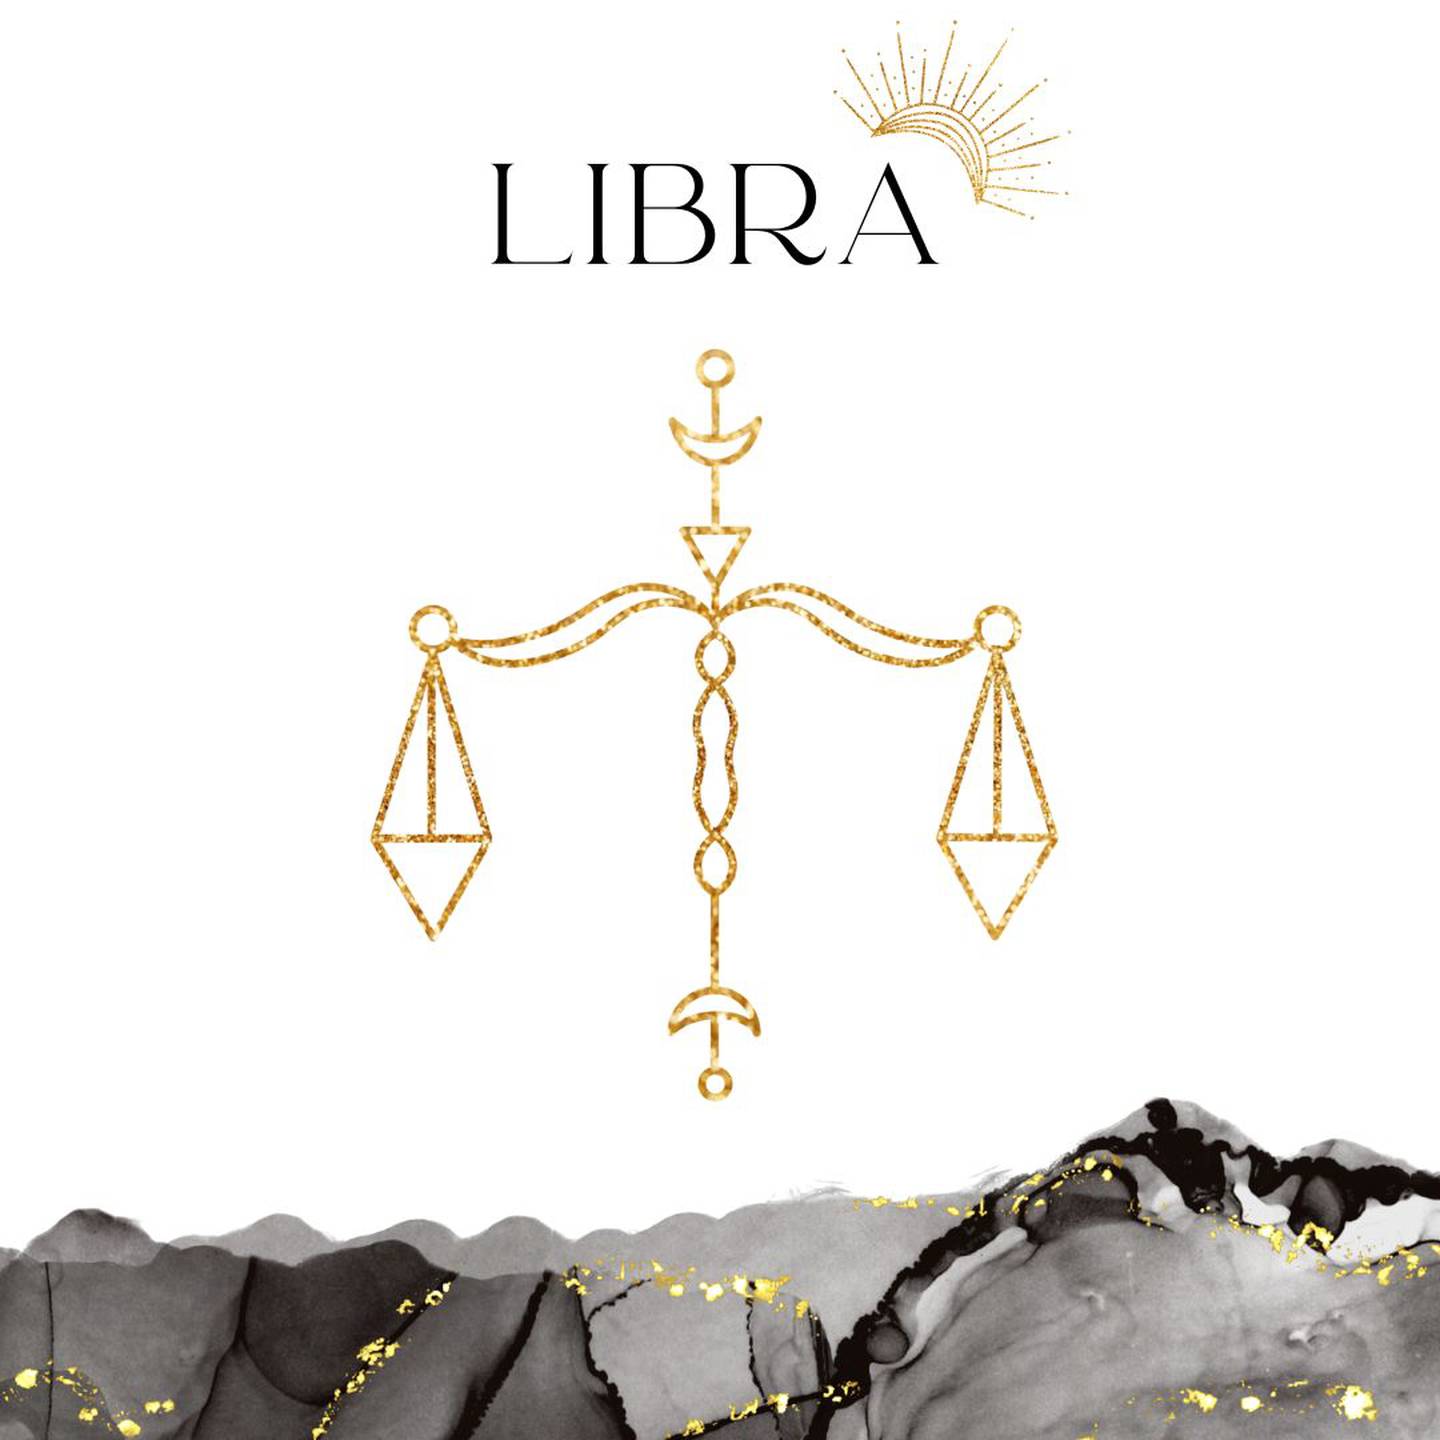 Palabra 'LIBRA' en letras grandes y negras en el centro. Debajo, símbolo del signo de Libra: una balanza dorada.